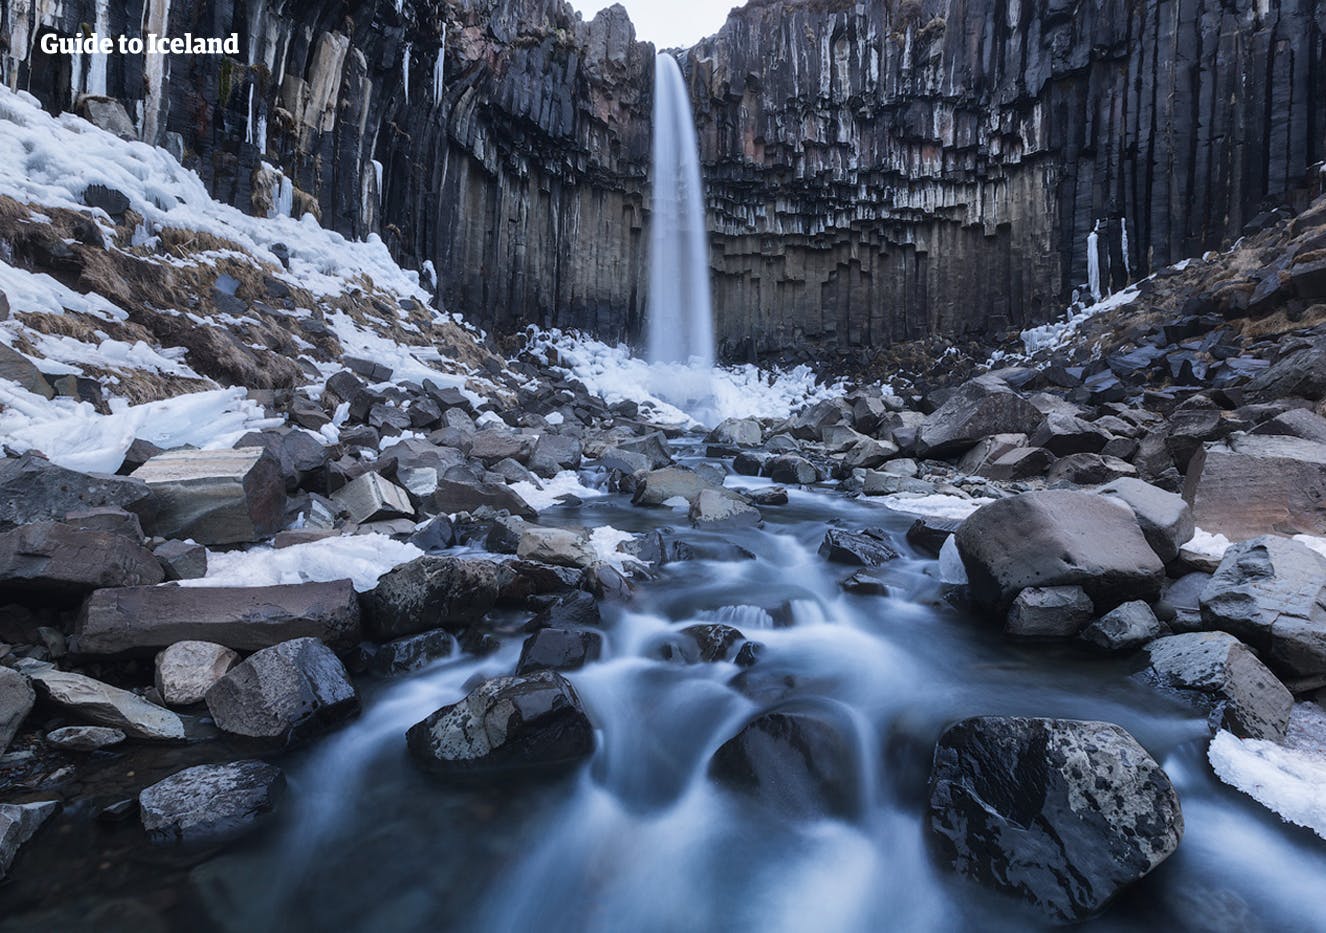 Der Svartifoss in Skaftafell ist ein Wasserfall, der von sechseckigen Basaltsäulen umgeben ist.